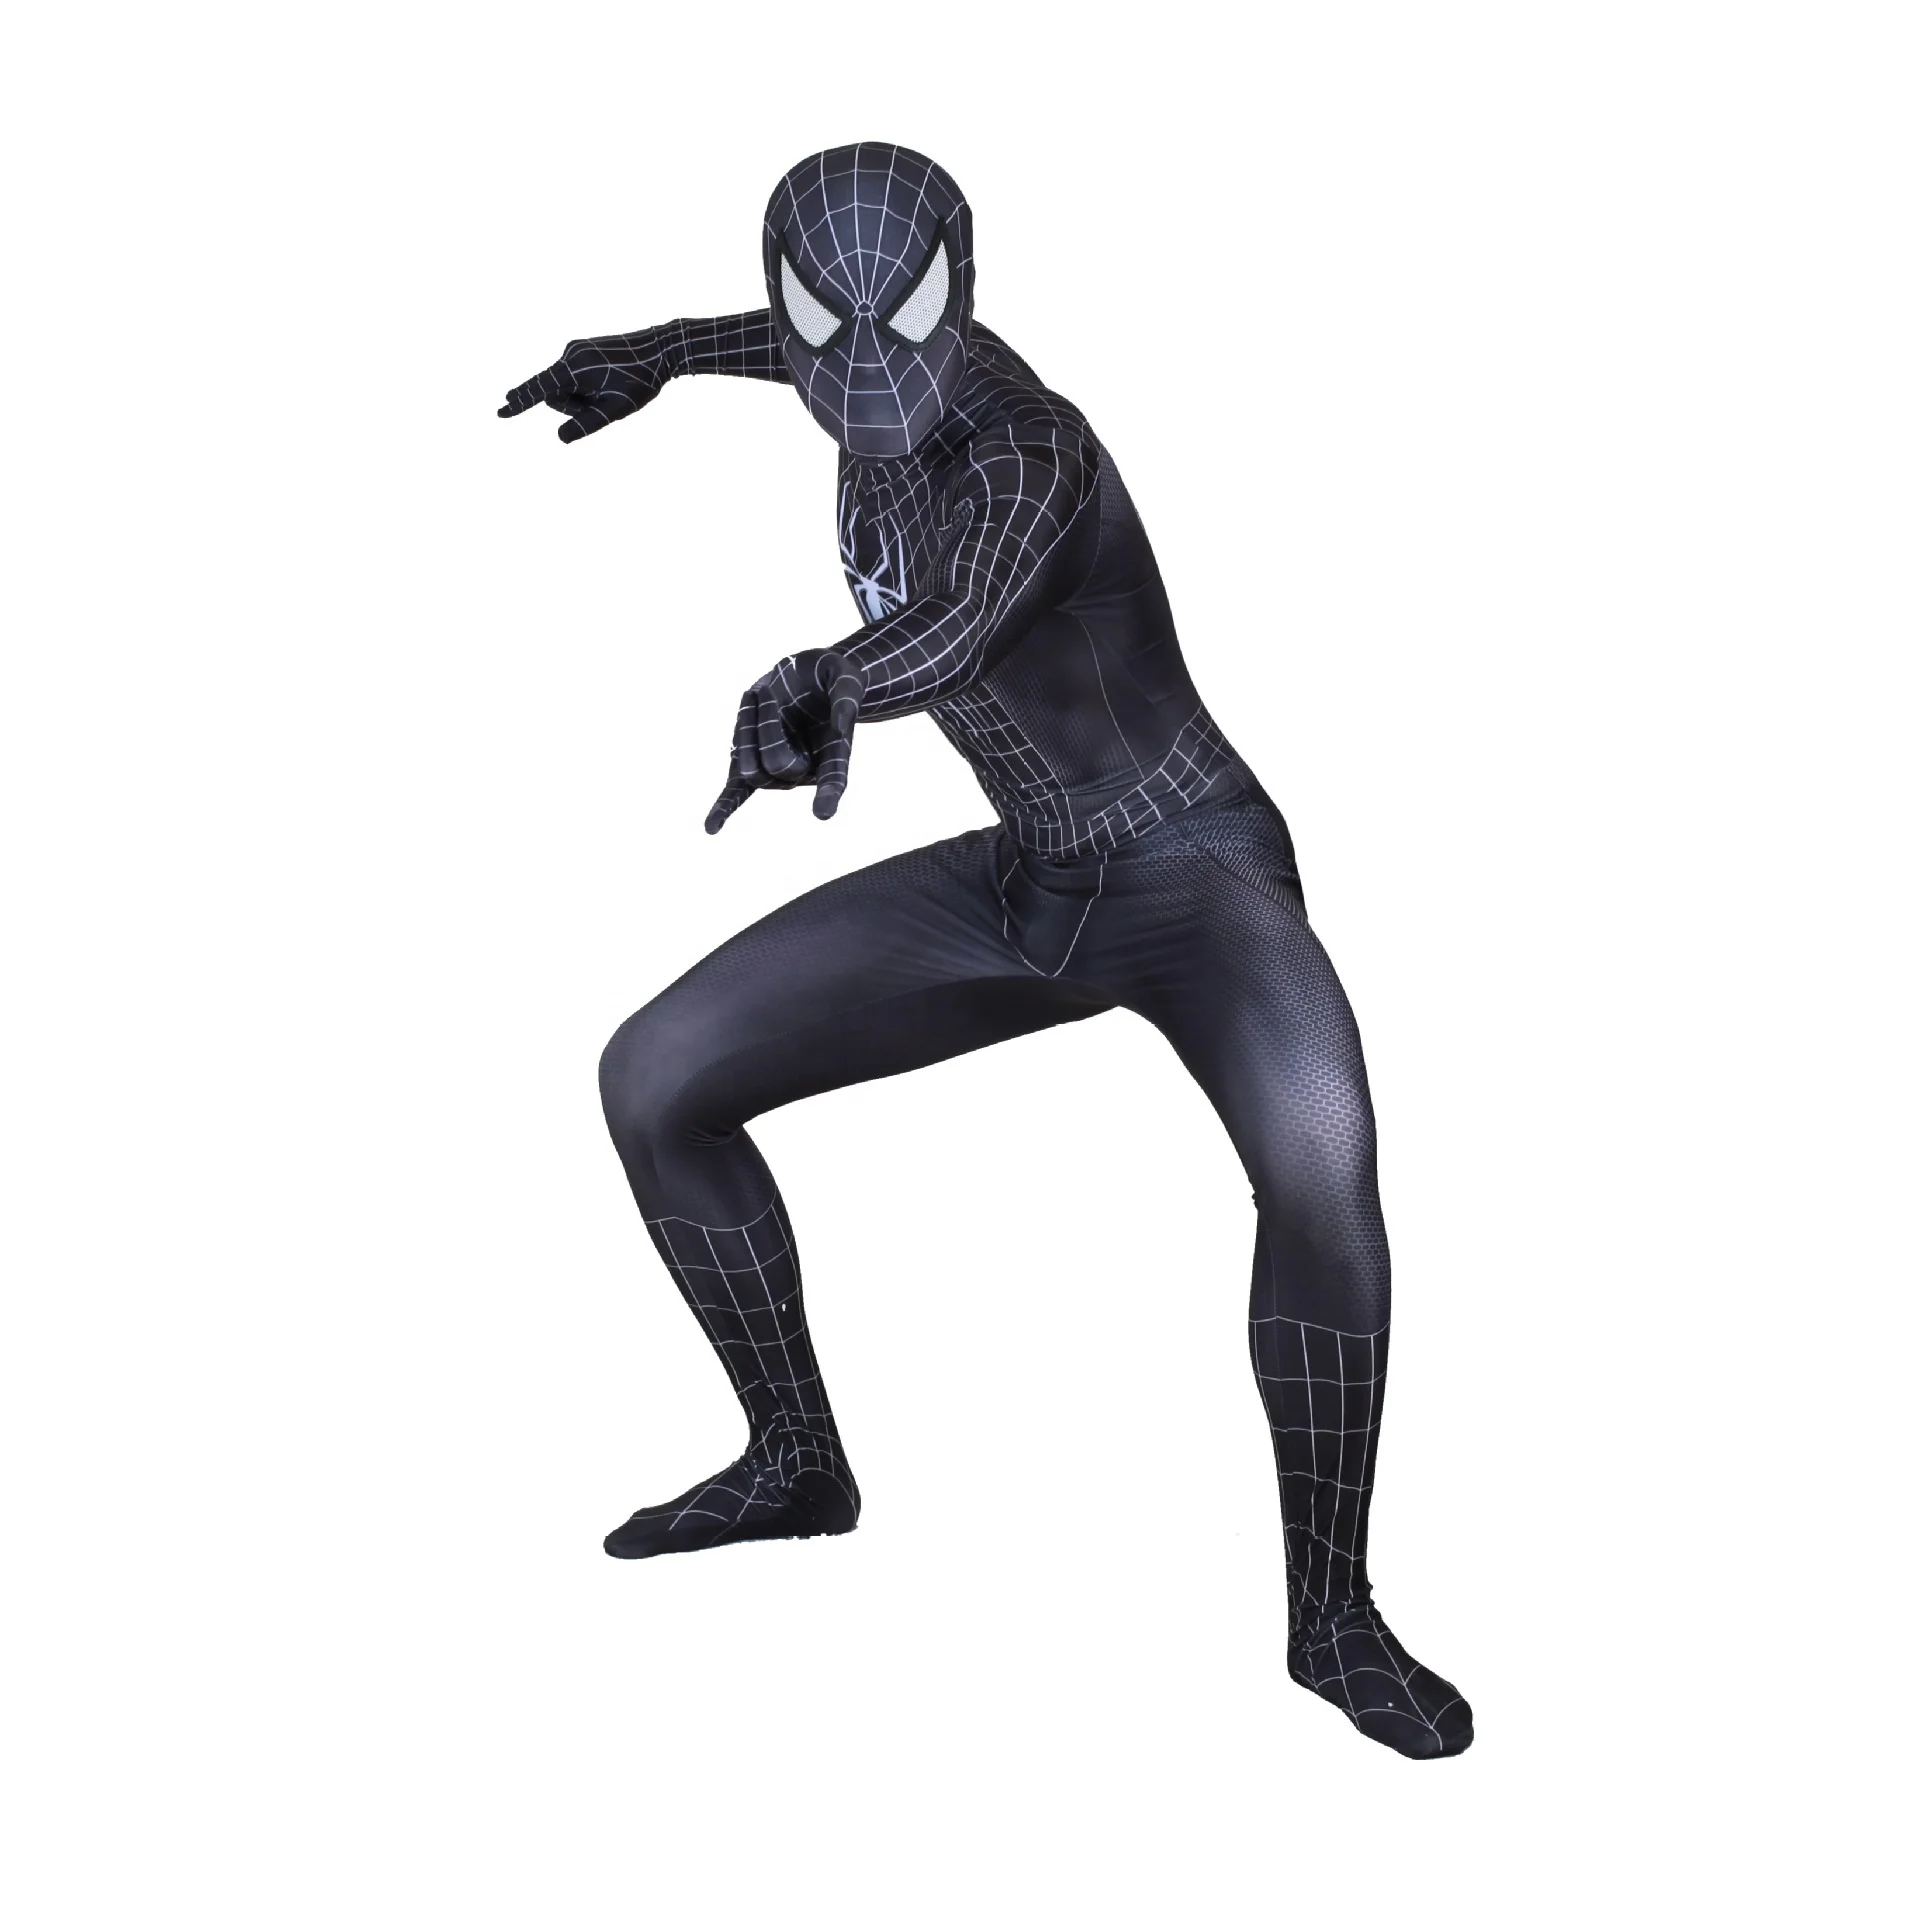 

Wholesale Movie Bodysuit Jumpsuit Marvel Superhero Adult and Child Anime Black Spider man Cosplay Costume Spiderman